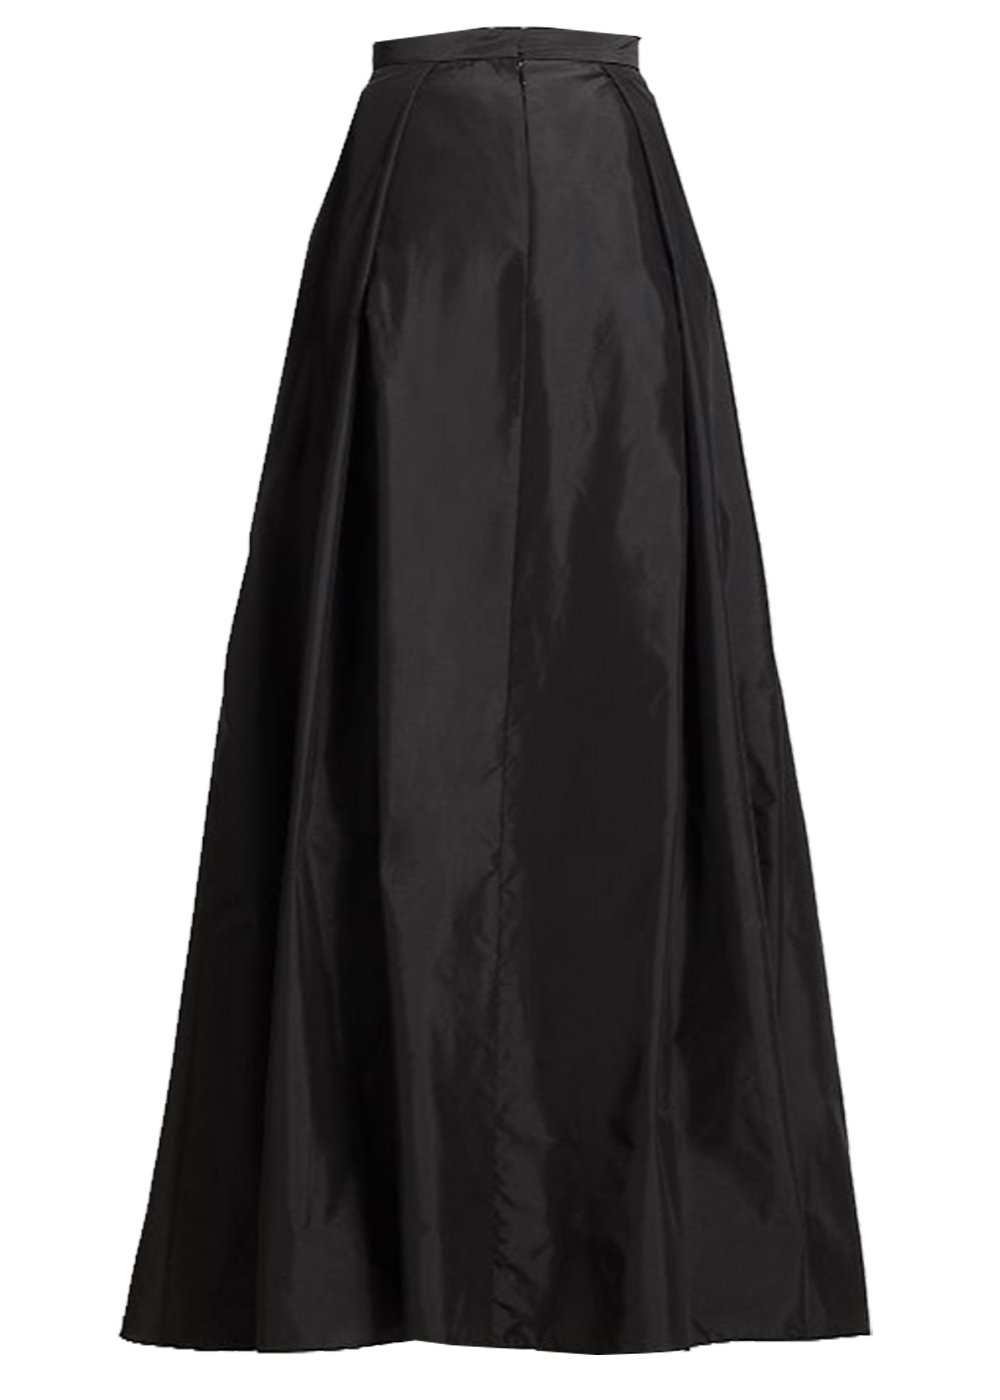 Straight skirts – Elizabeth's Custom Skirts